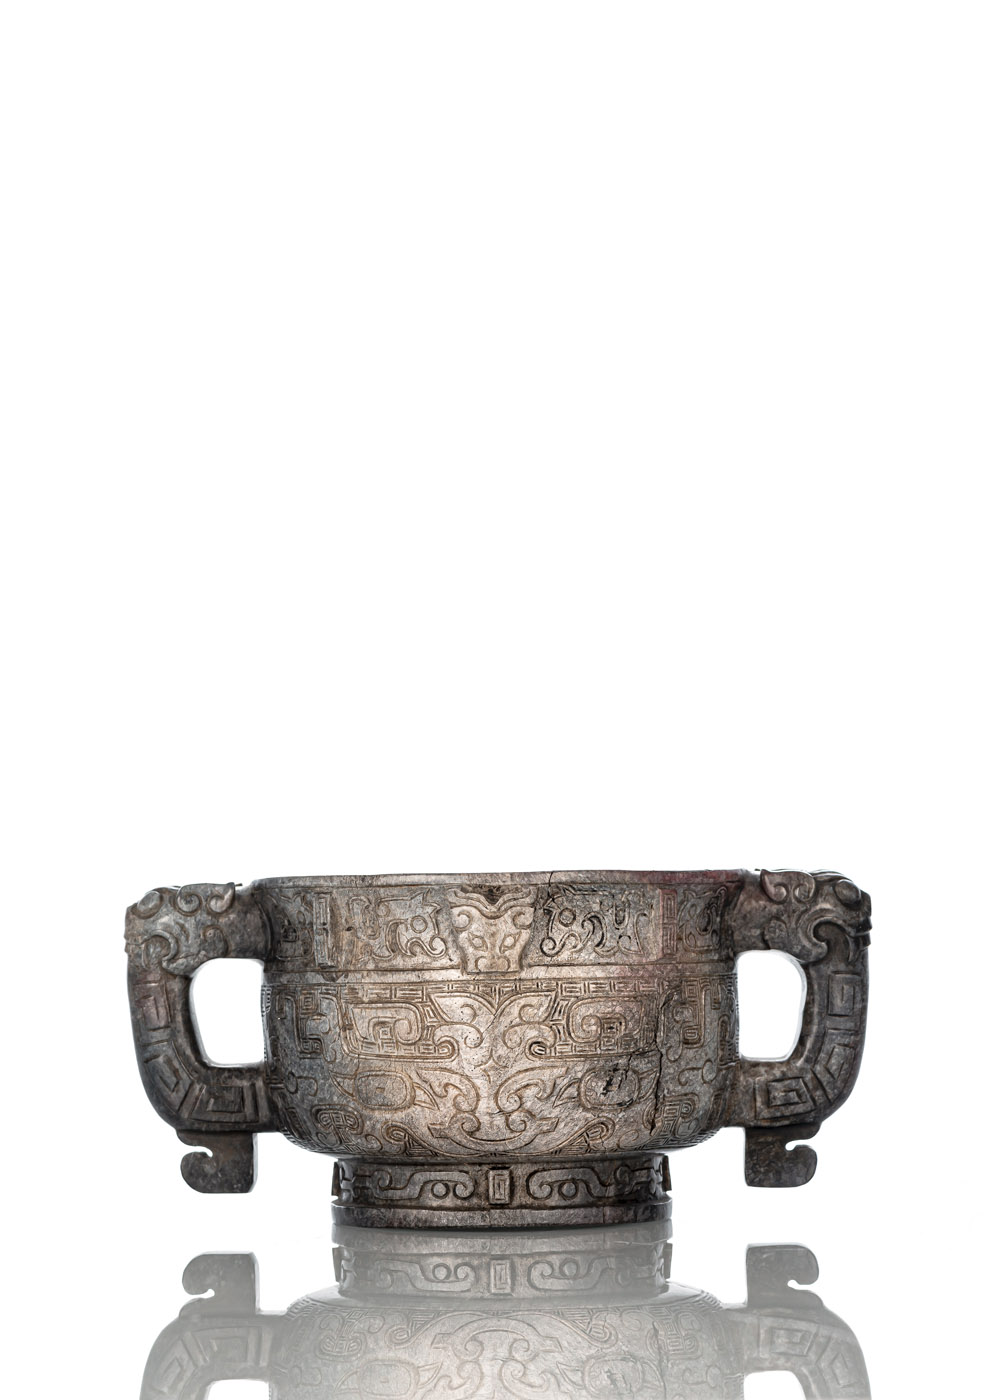 <b>Seltenes 'gui' aus Jade im archaischen Stil mit großen 'taotie' in Reliefschnitzerei dekoriert</b>